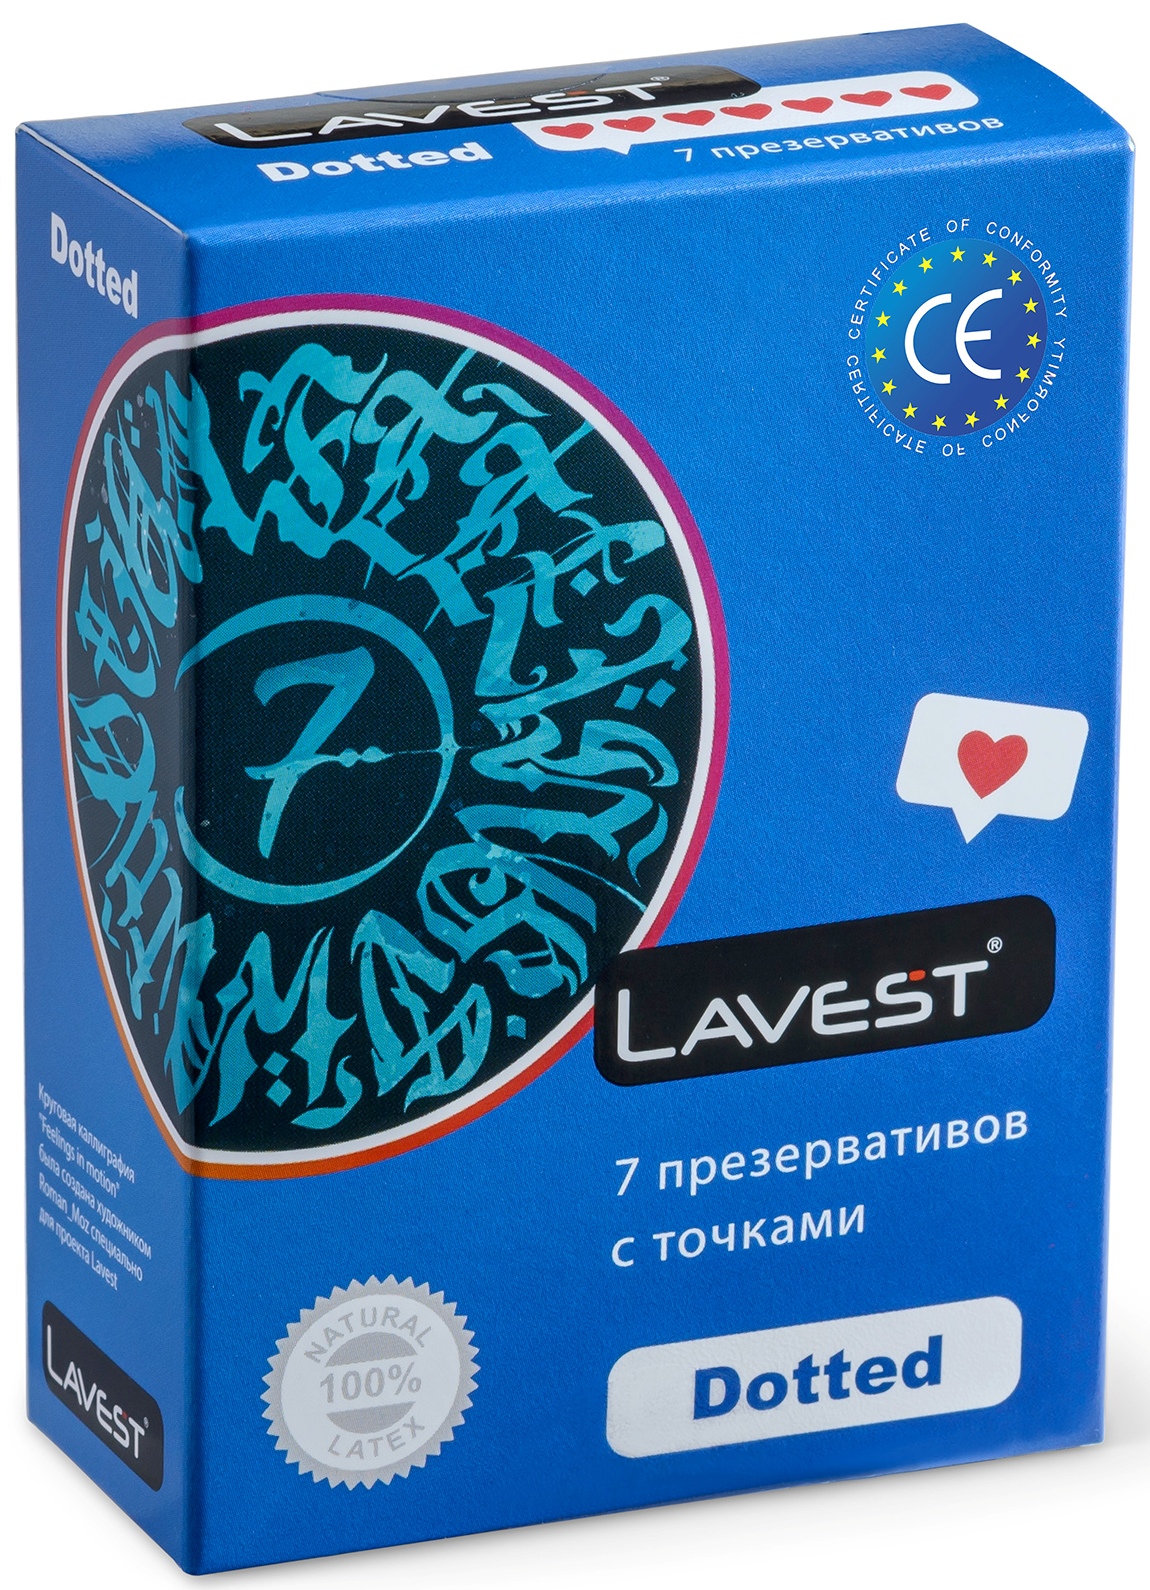 Купить Презервативы Lavest Dotted с точками для дополнительной стимуляции 7 шт.